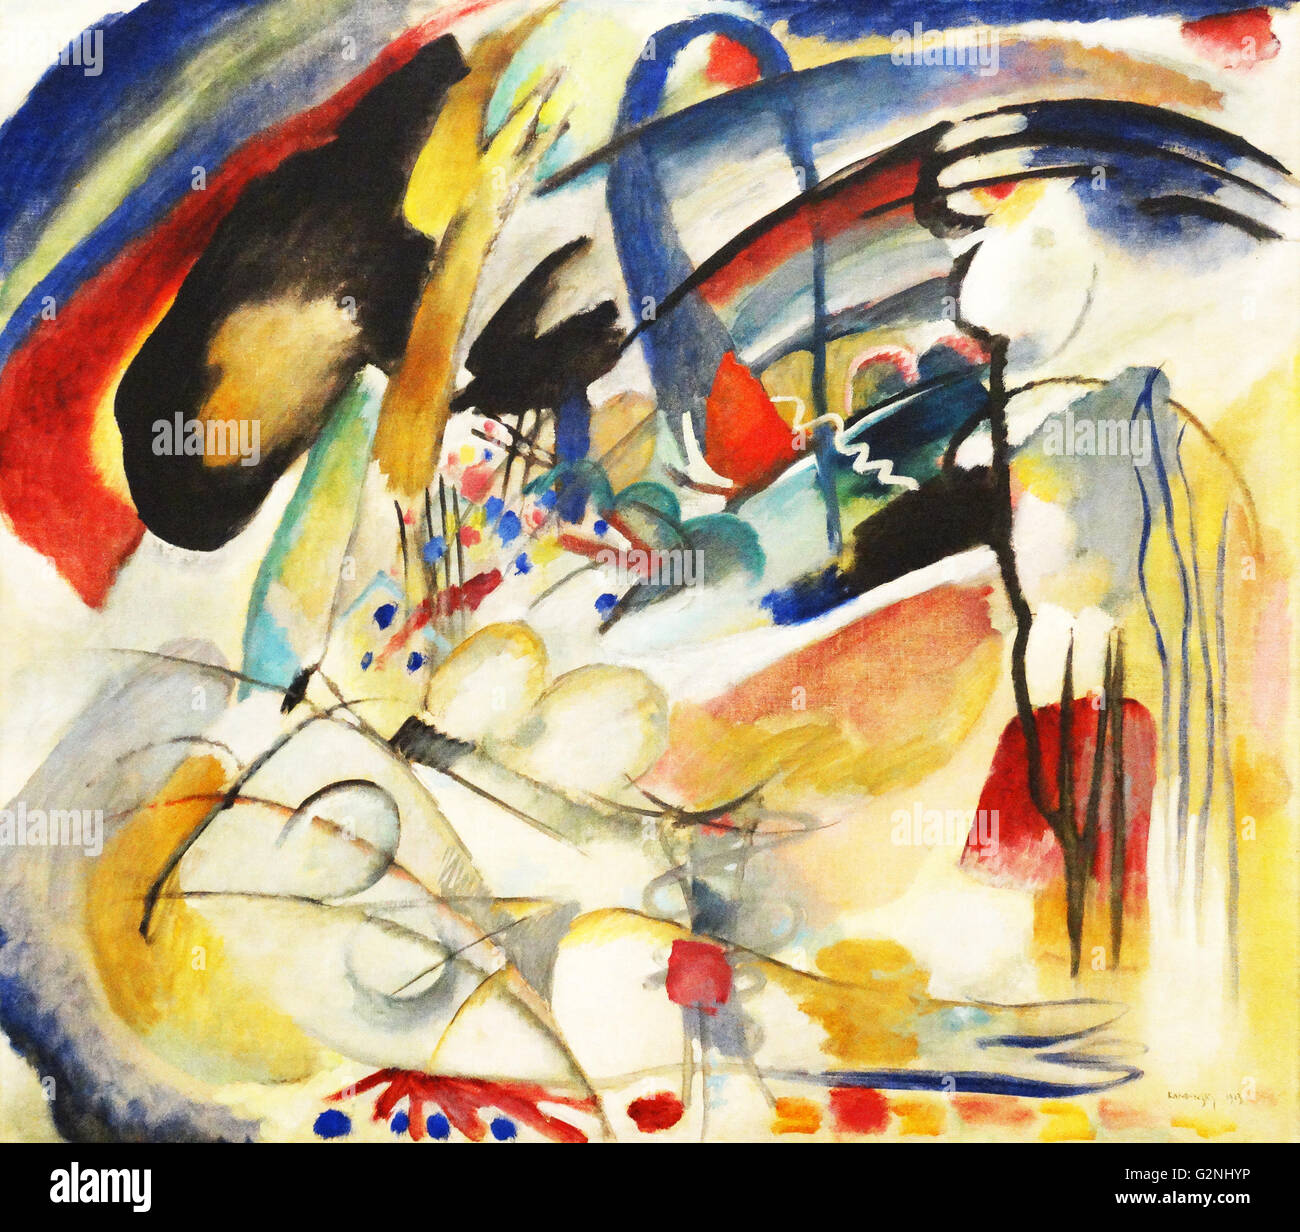 Improvisation 33 (Orient 1) (Öl auf Leinwand) von Wassily Kandinsky (1866-1944) einen einflussreichen russischen Maler und Kunsttheoretiker. Er ist mit der Malerei der ersten rein abstrakten Werke gutgeschrieben. Stockfoto